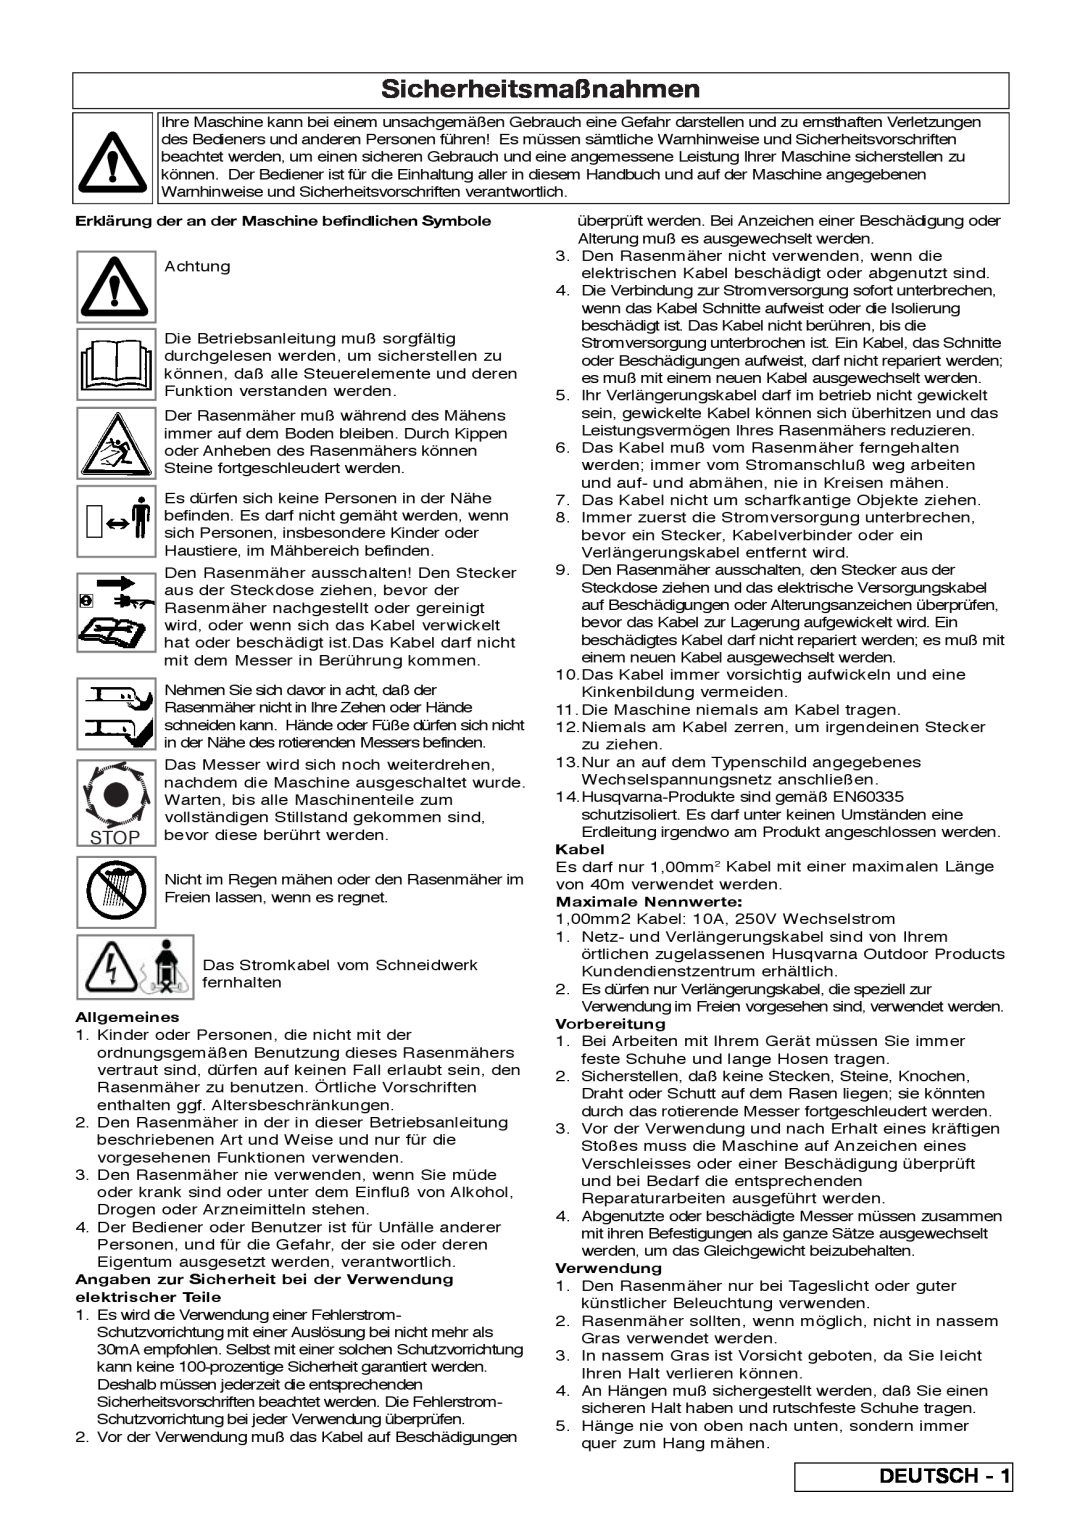 Flymo VM032 manual Sicherheitsmaßnahmen, Deutsch 